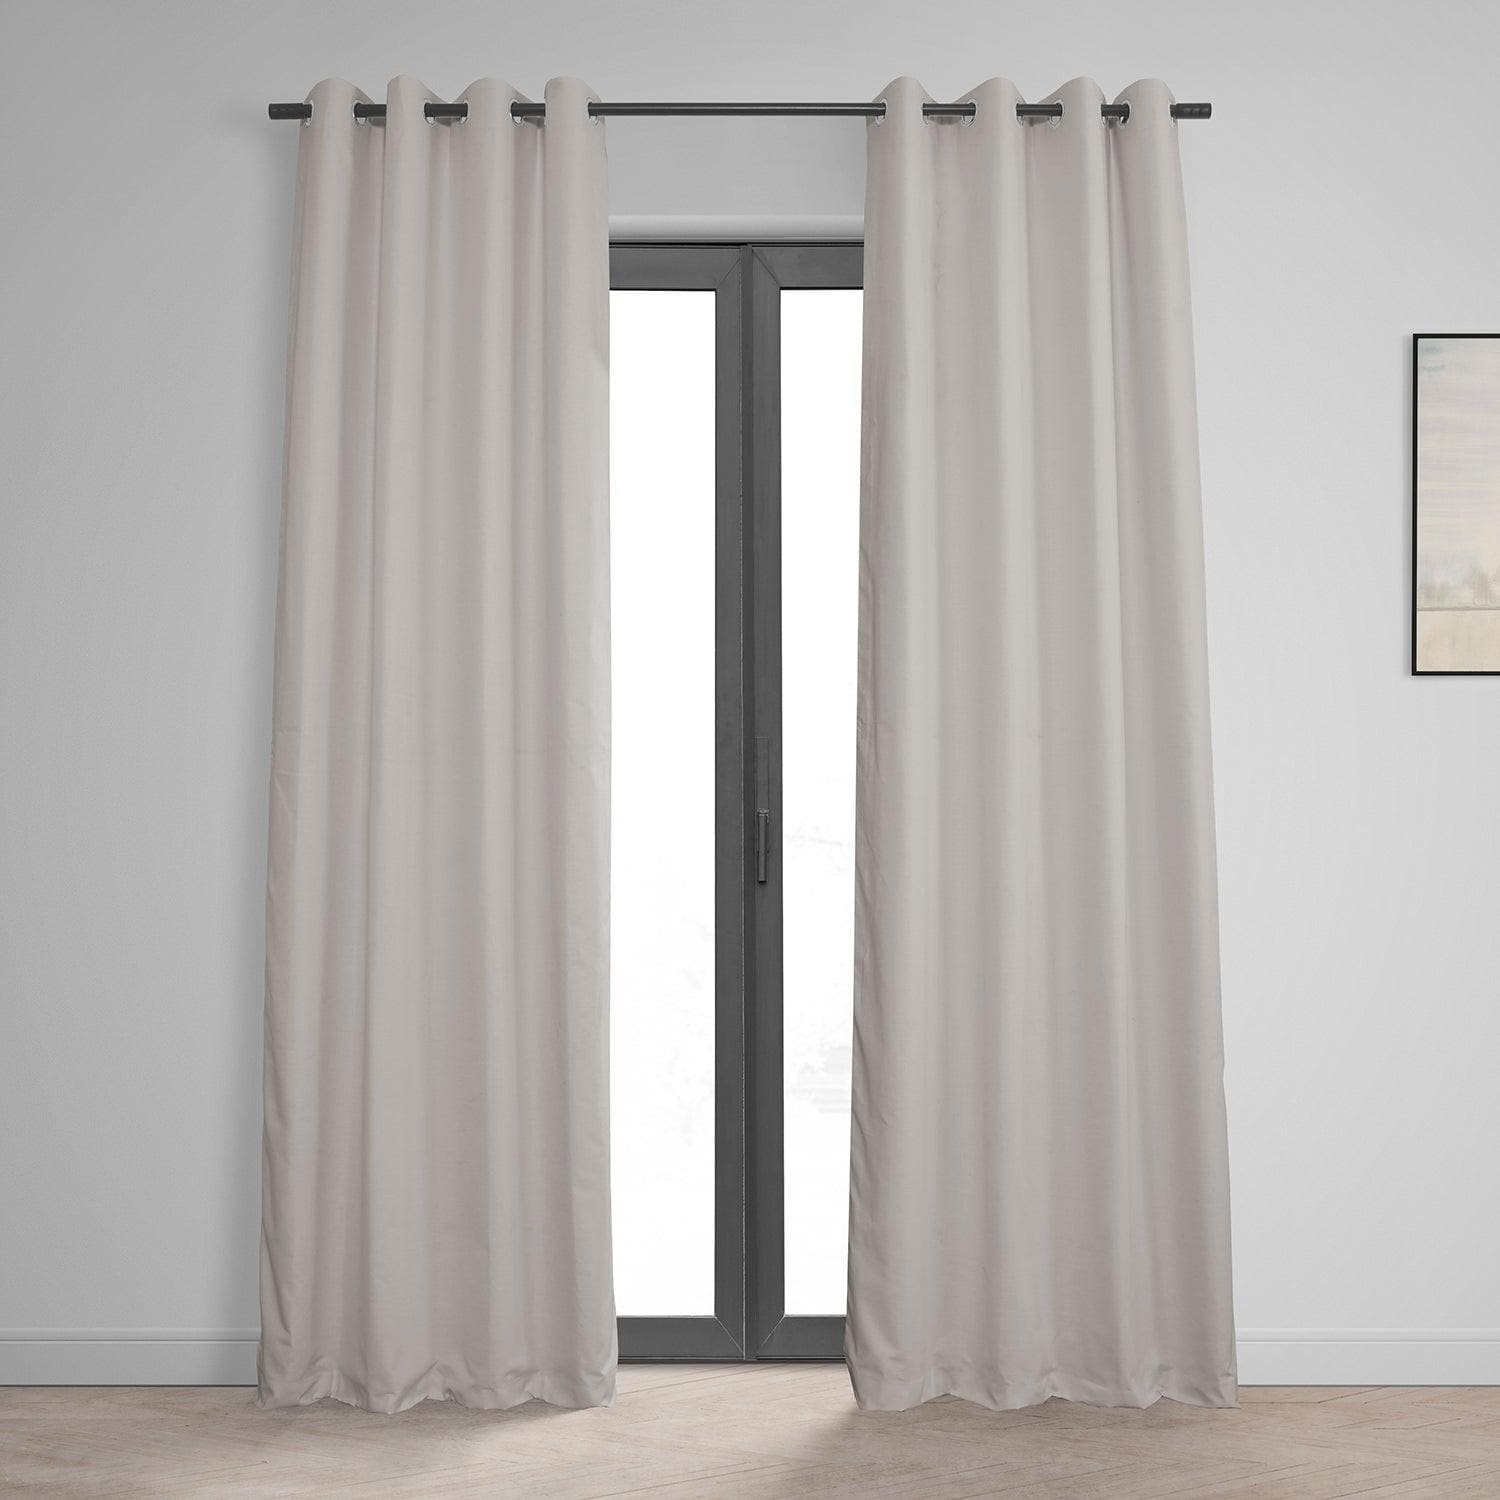 Supreme Grommet Top Blackout Curtains, Pair